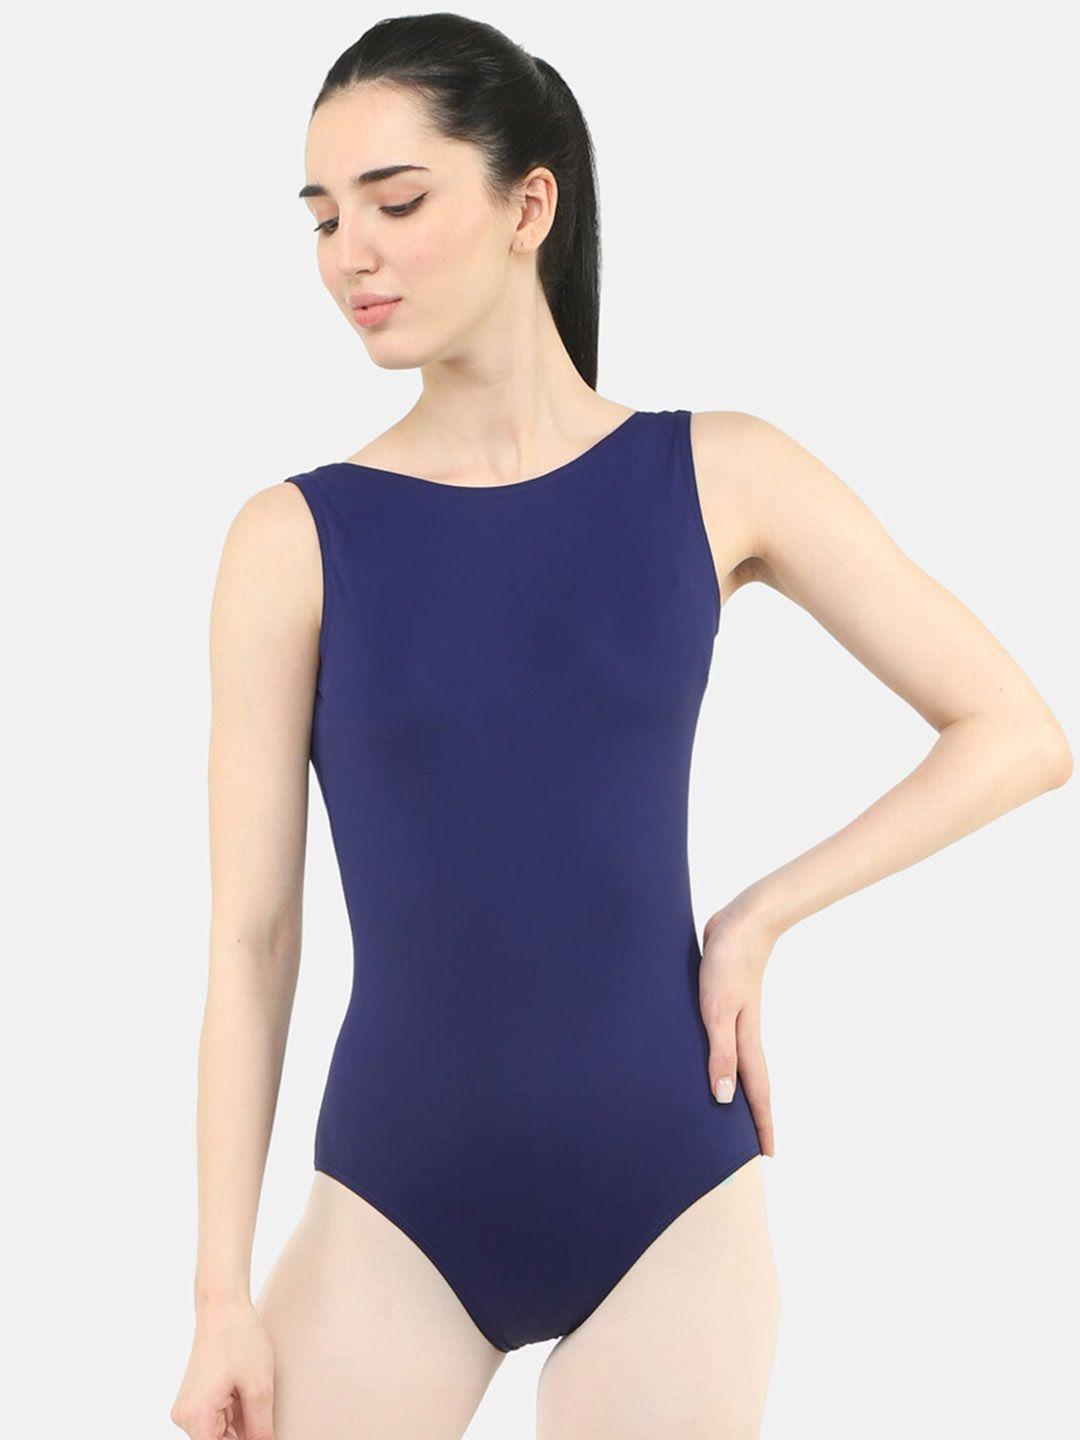 ikaanya-women-ballet-leotard-bodysuit